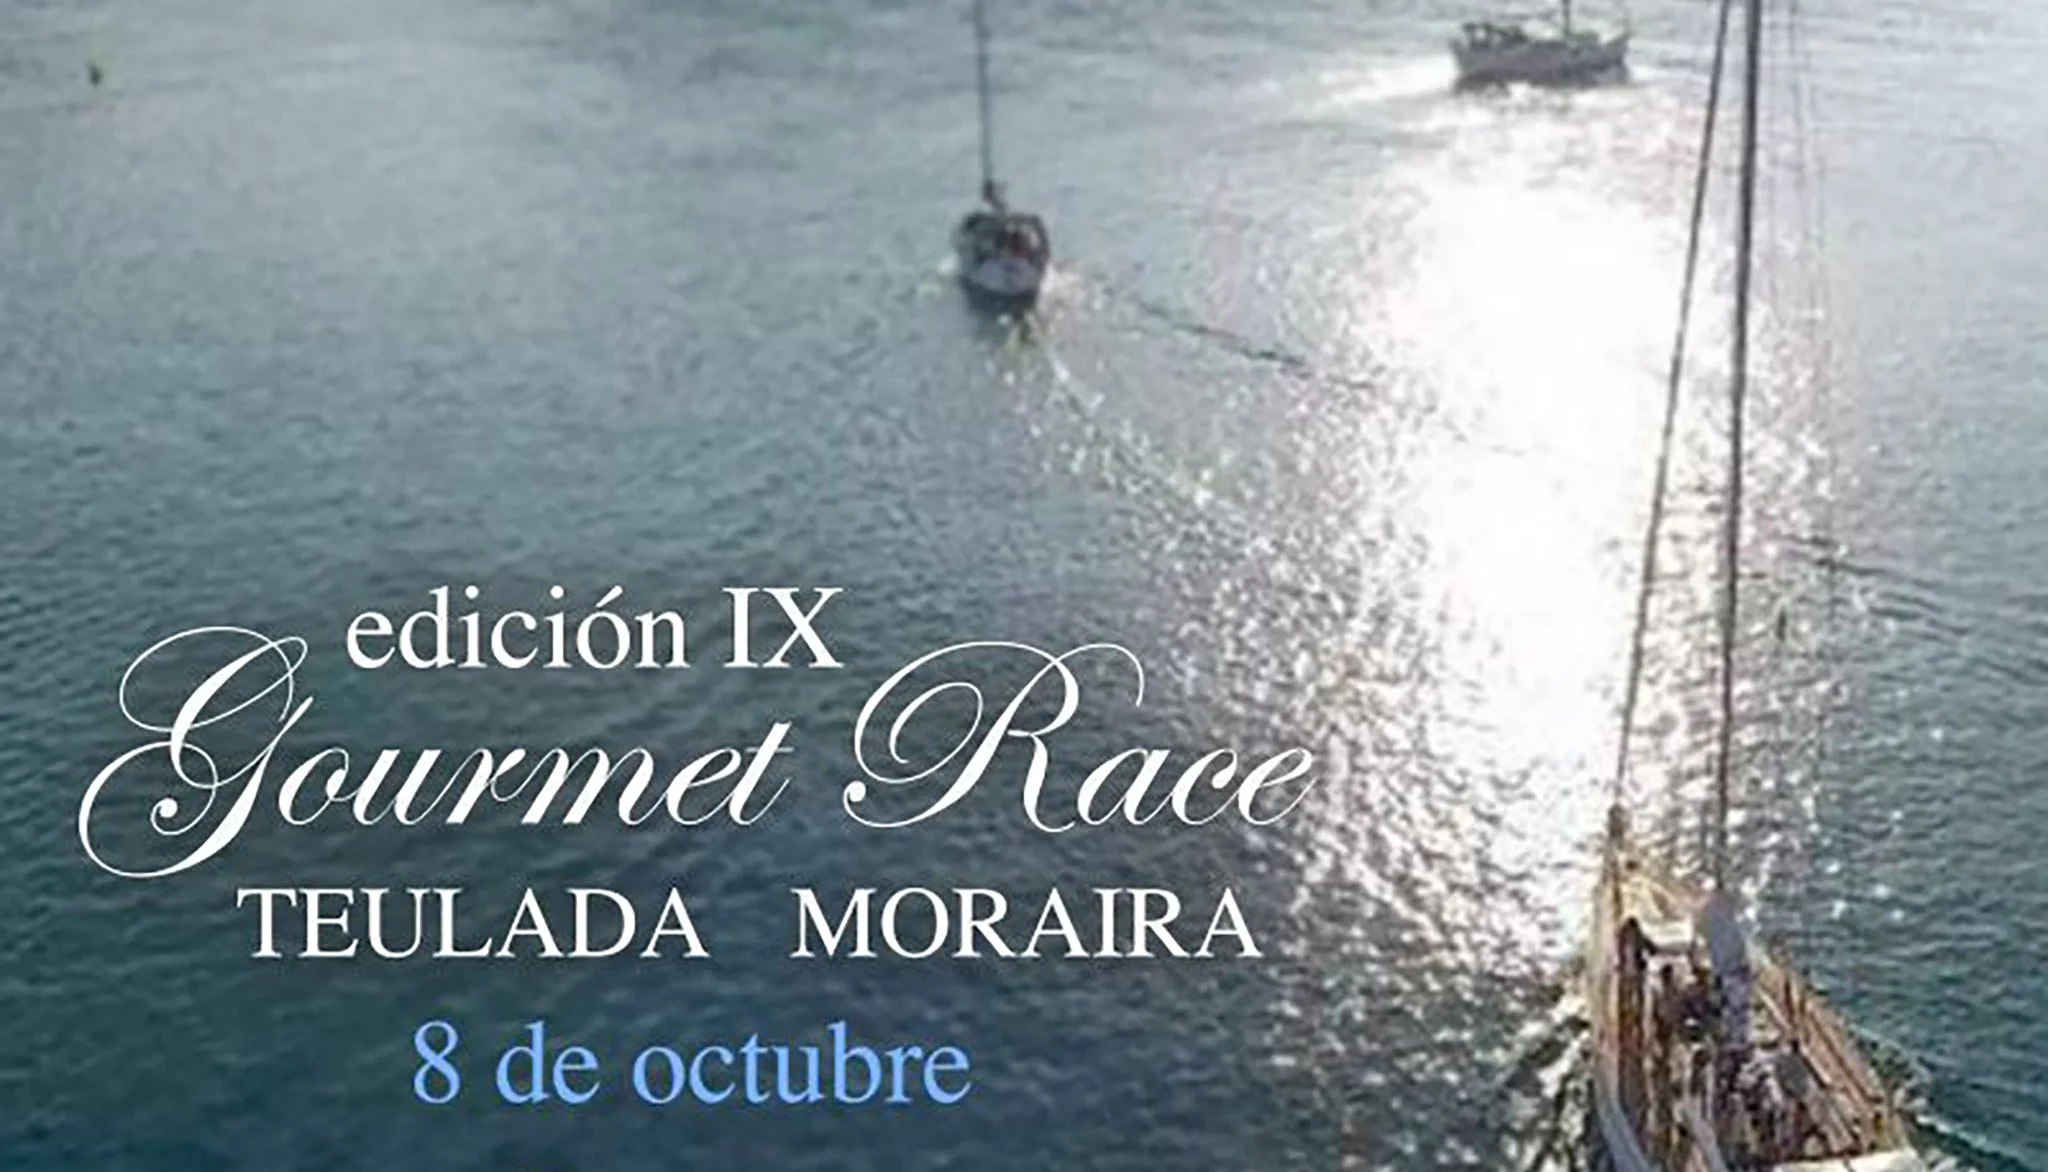 Cartel del Gourmet Race de Teulada-Moraira